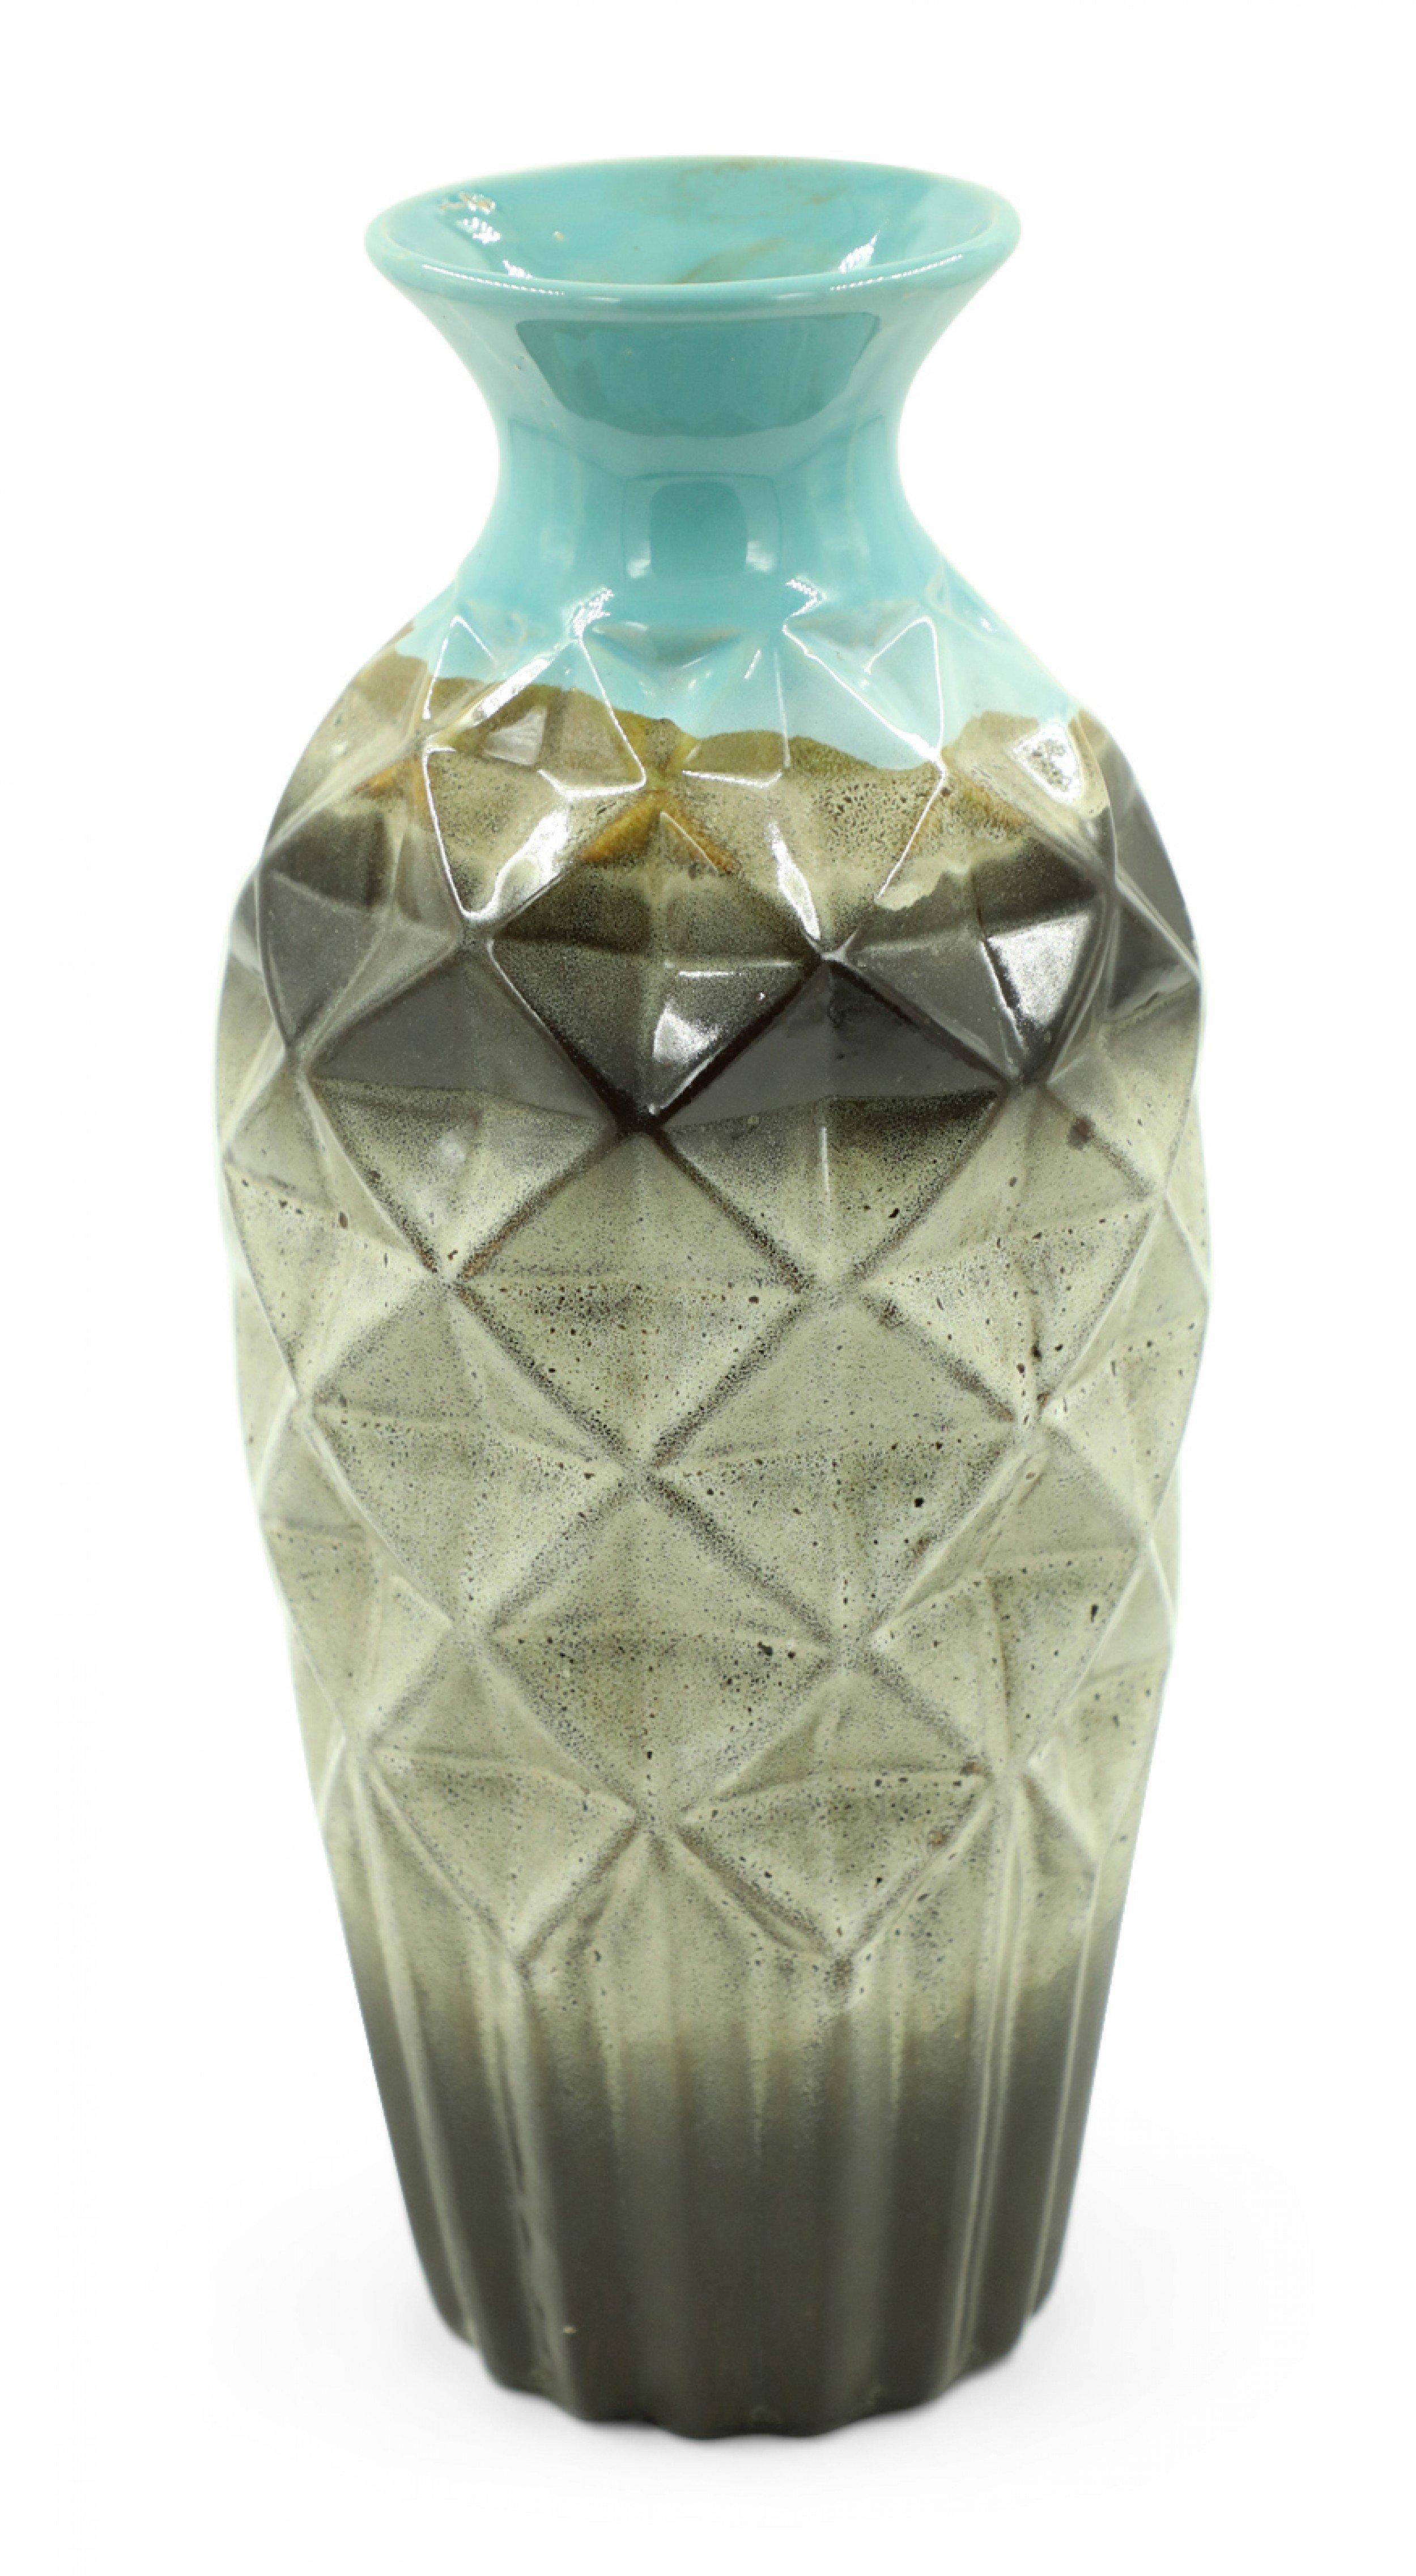 Zeitgenössische, blau, braun und beige glasierte Keramikvase mit facettiertem, geometrischem, urnenförmigem Körper, geripptem Sockel und kannelierter Öffnung.
    